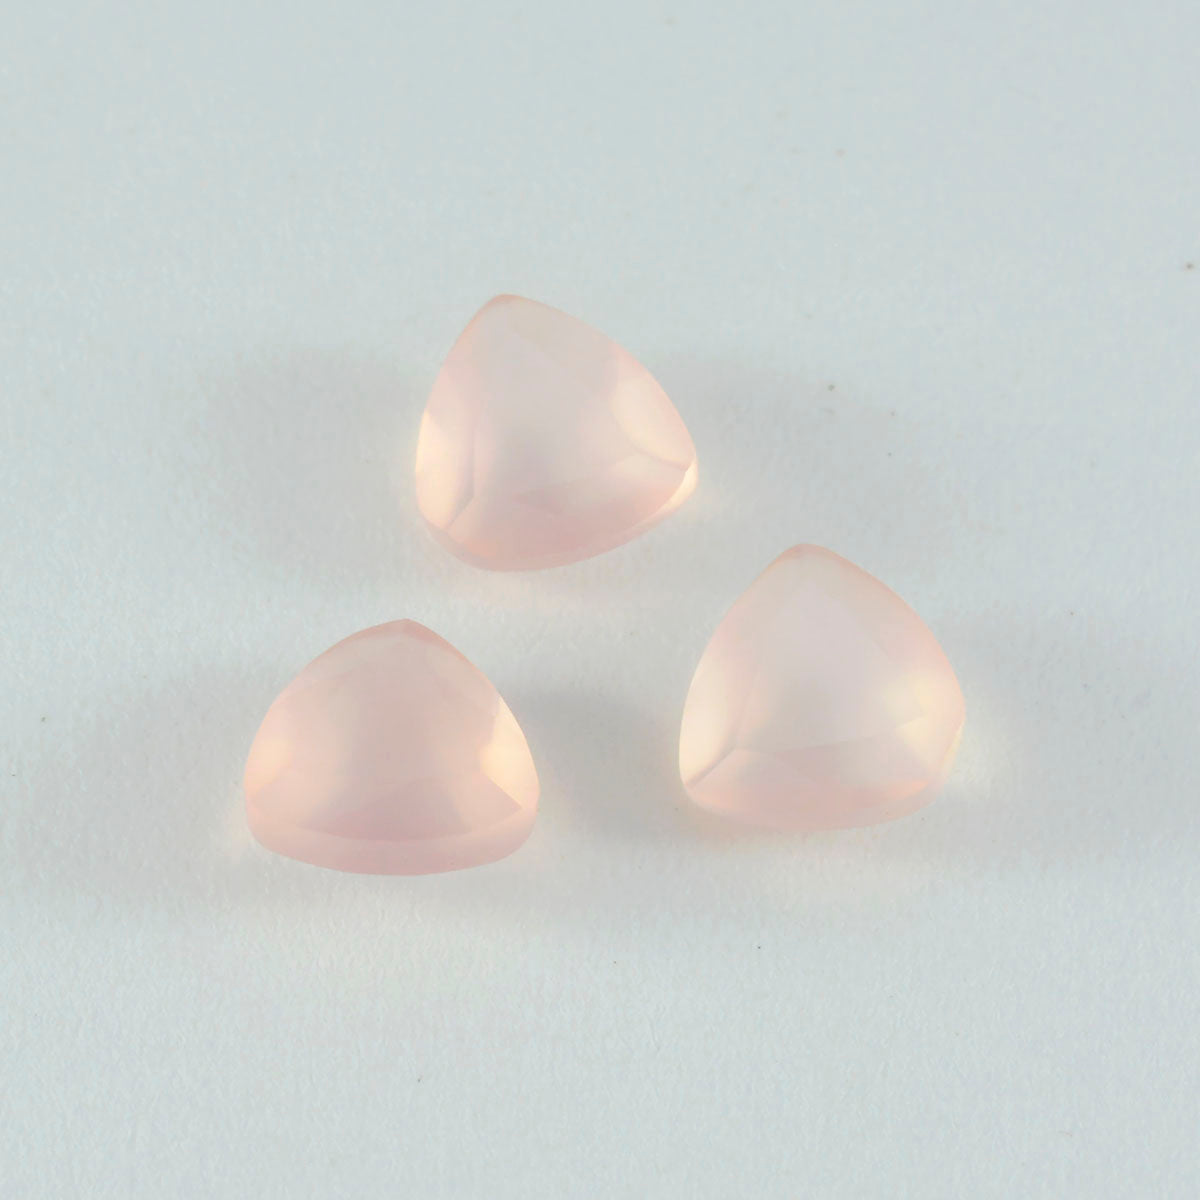 riyogems 1 шт. розовый кварц ограненный 13x13 мм форма триллиона хорошее качество драгоценный камень